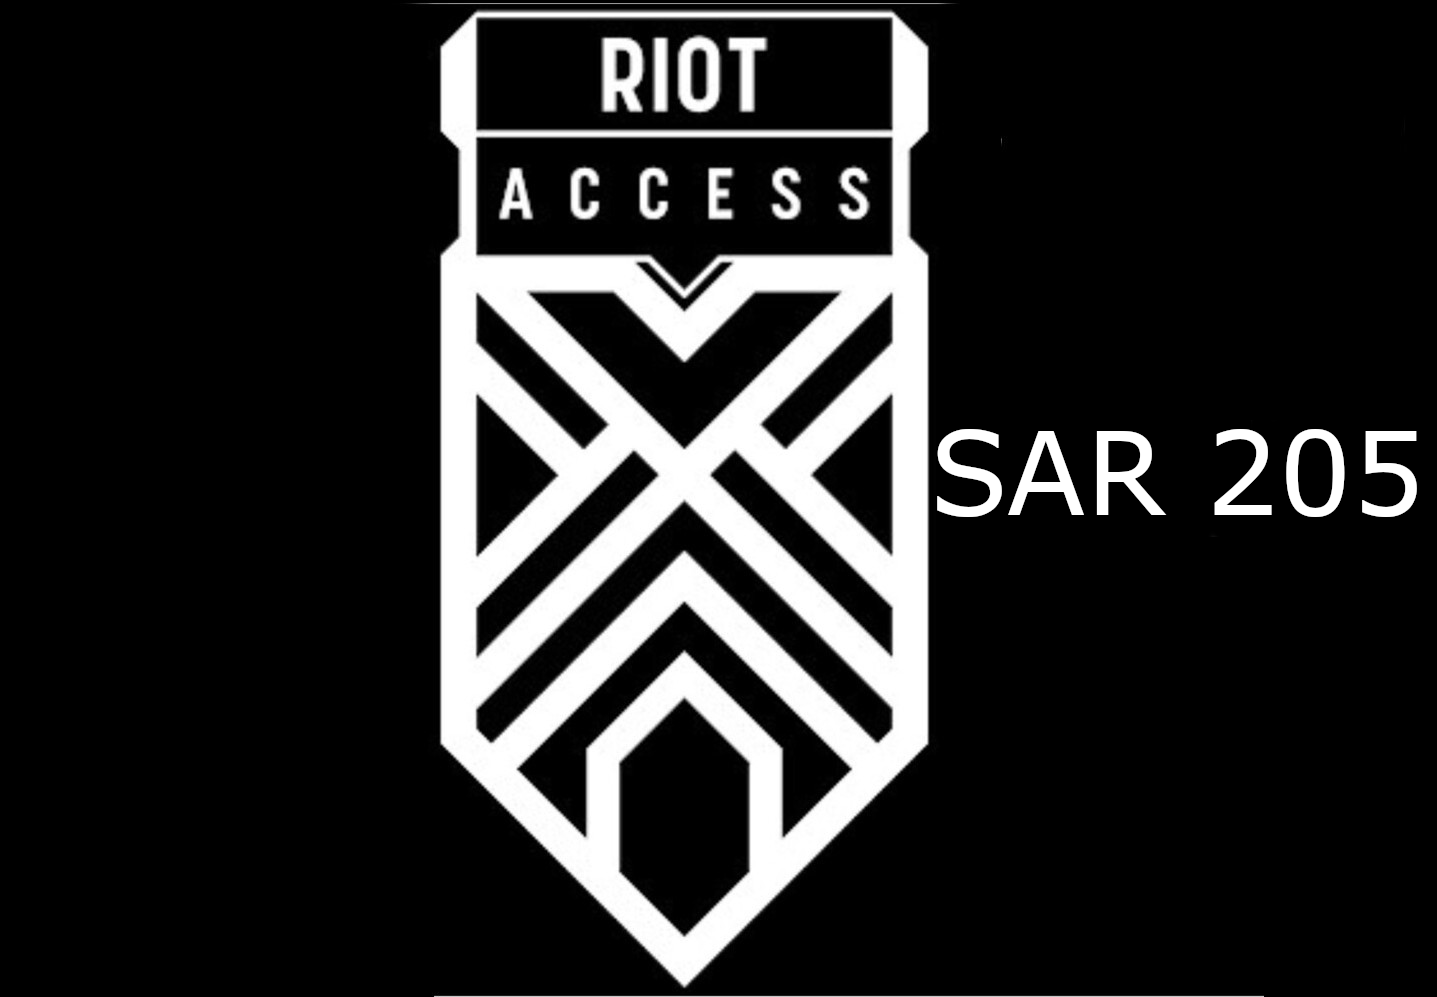 Riot Access 205 SAR Code SA